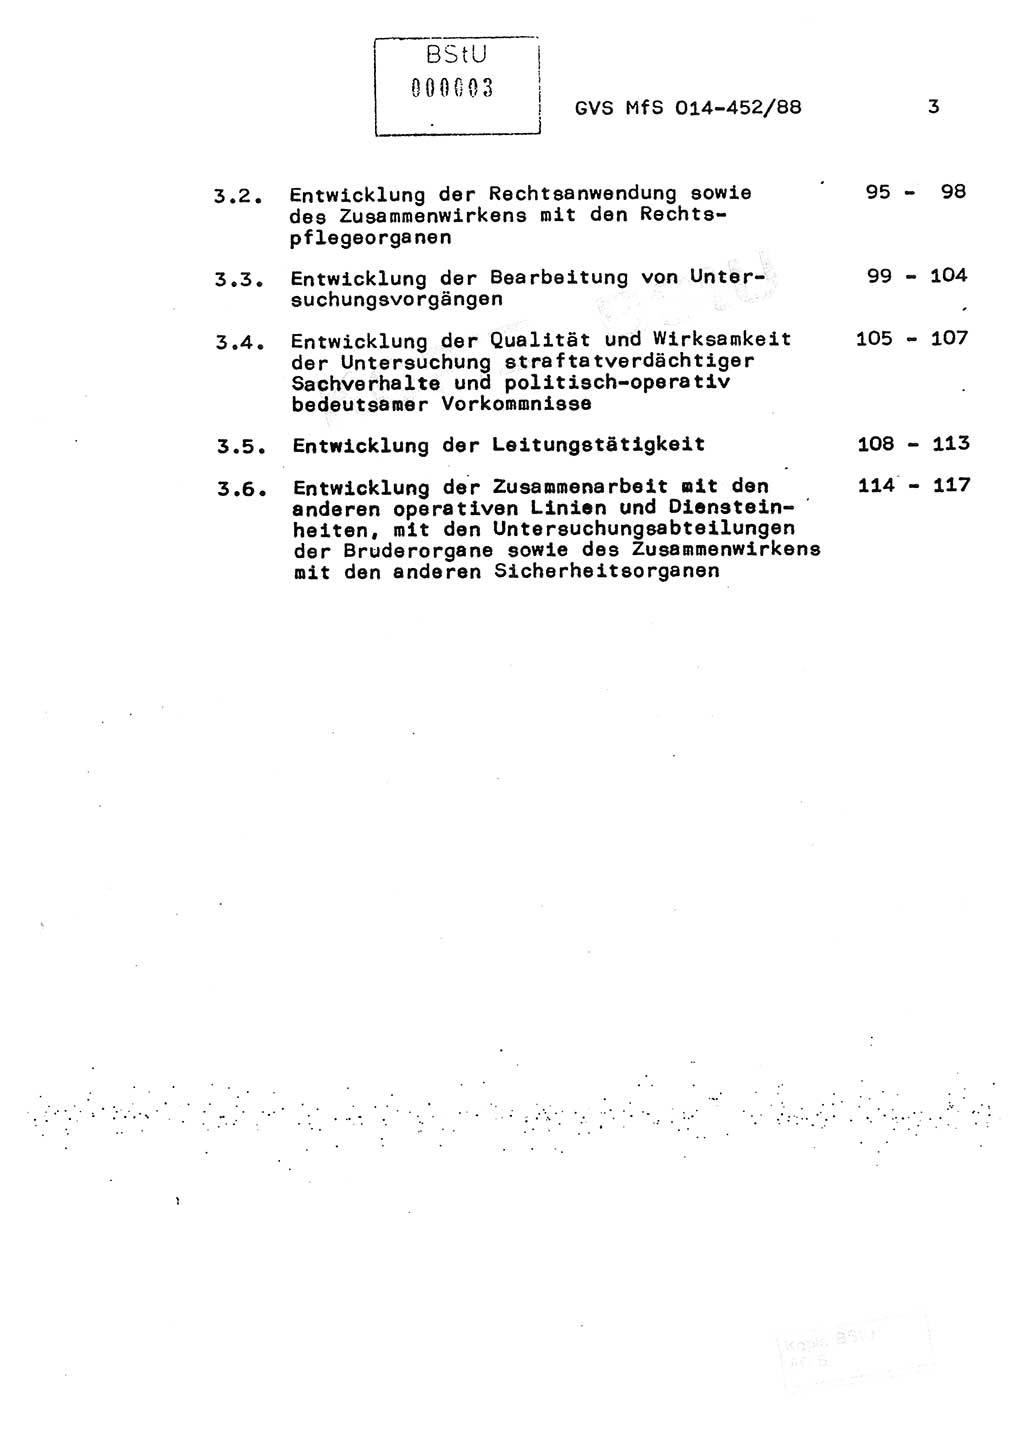 Jahresbericht der Hauptabteilung (HA) Ⅸ 1987, Einschätzung der Wirksamkeit der Untersuchungsarbeit im Jahre 1987, Ministerium für Staatssicherheit (MfS) der Deutschen Demokratischen Republik (DDR), Hauptabteilung Ⅸ, Geheime Verschlußsache (GVS) o014-452/88, Berlin 1988, Seite 3 (Einsch. MfS DDR HA Ⅸ GVS o014-452/88 1987, S. 3)